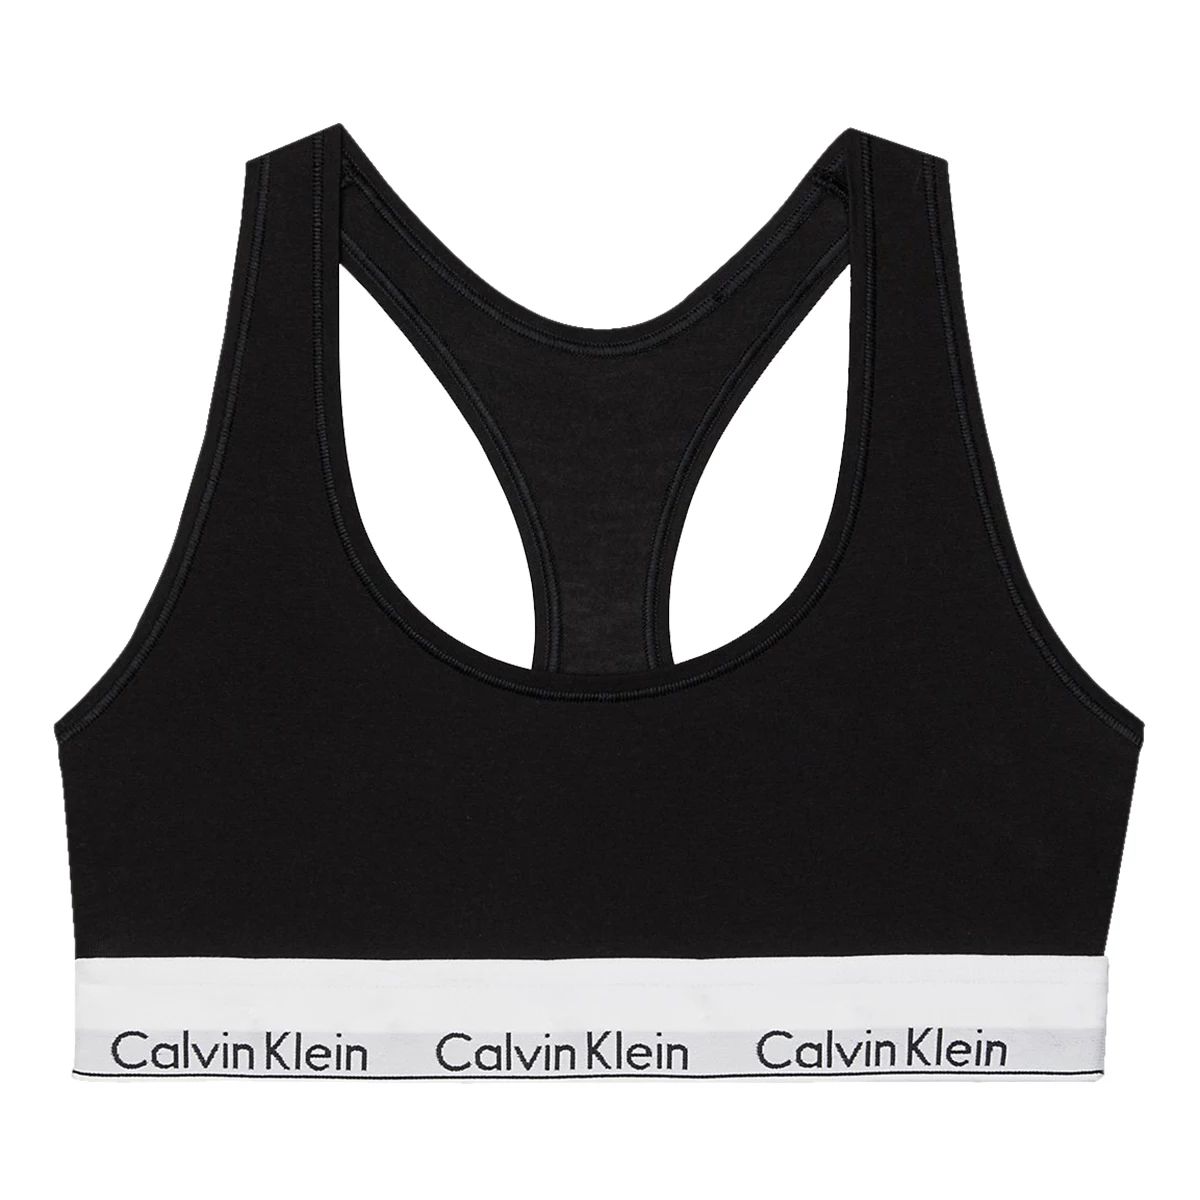 Calvin Klein Underwear S/S Short Set Black - Womens - Sleep